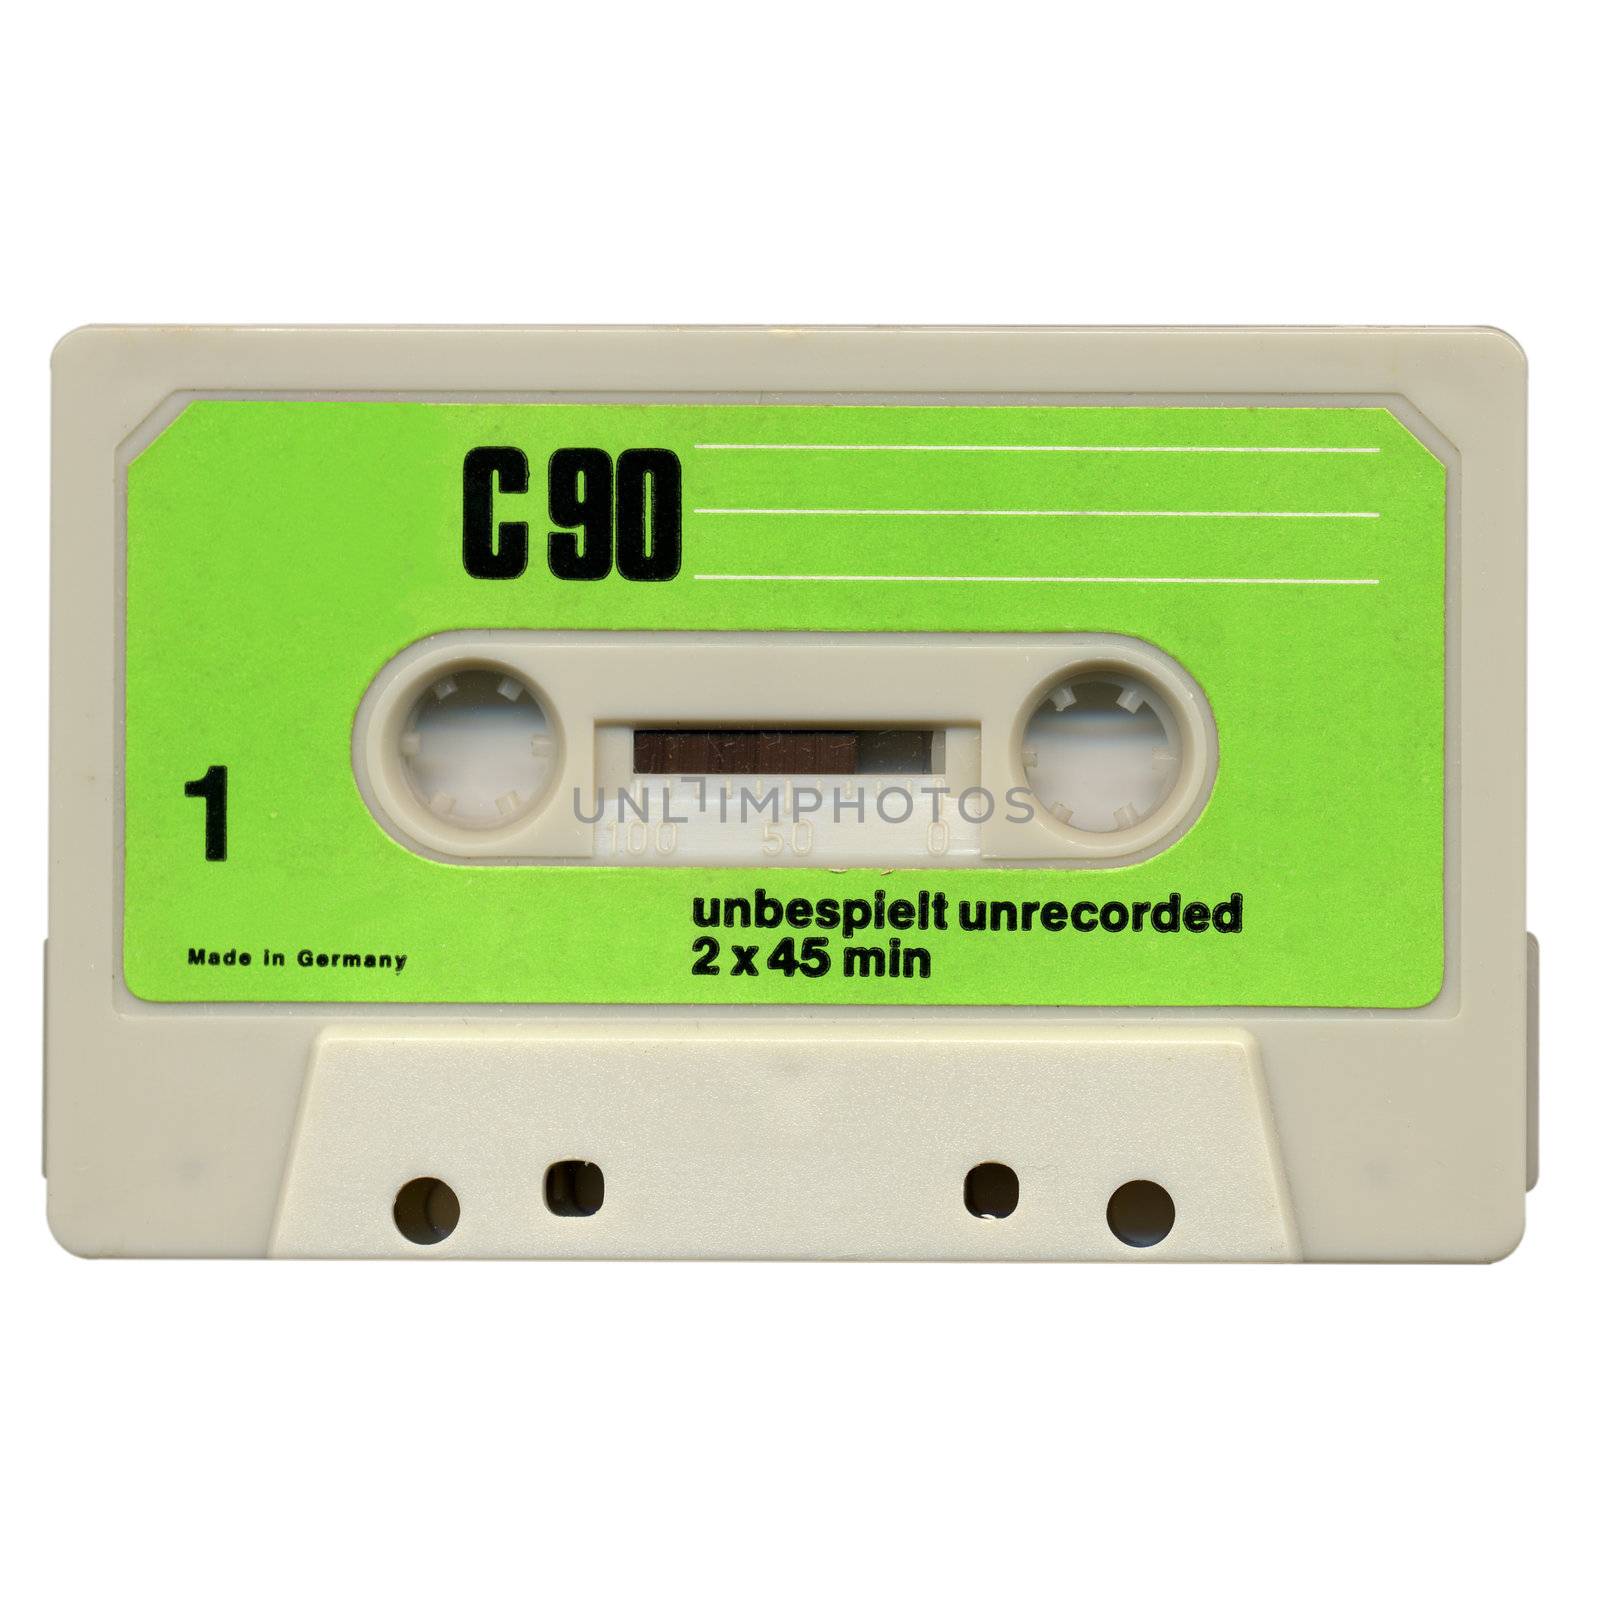 Cassette by claudiodivizia